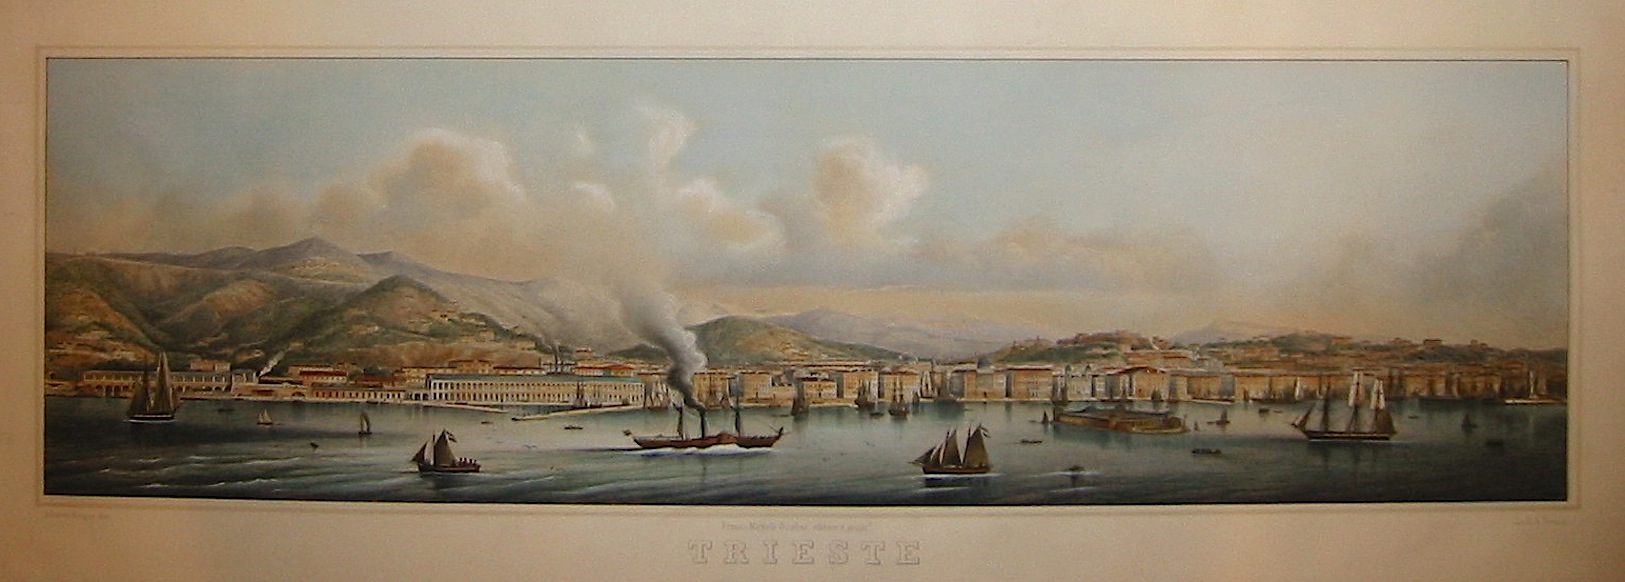 Linassi Bartolomeo Trieste 1850 ca. Trieste, presso Michele Scabar 